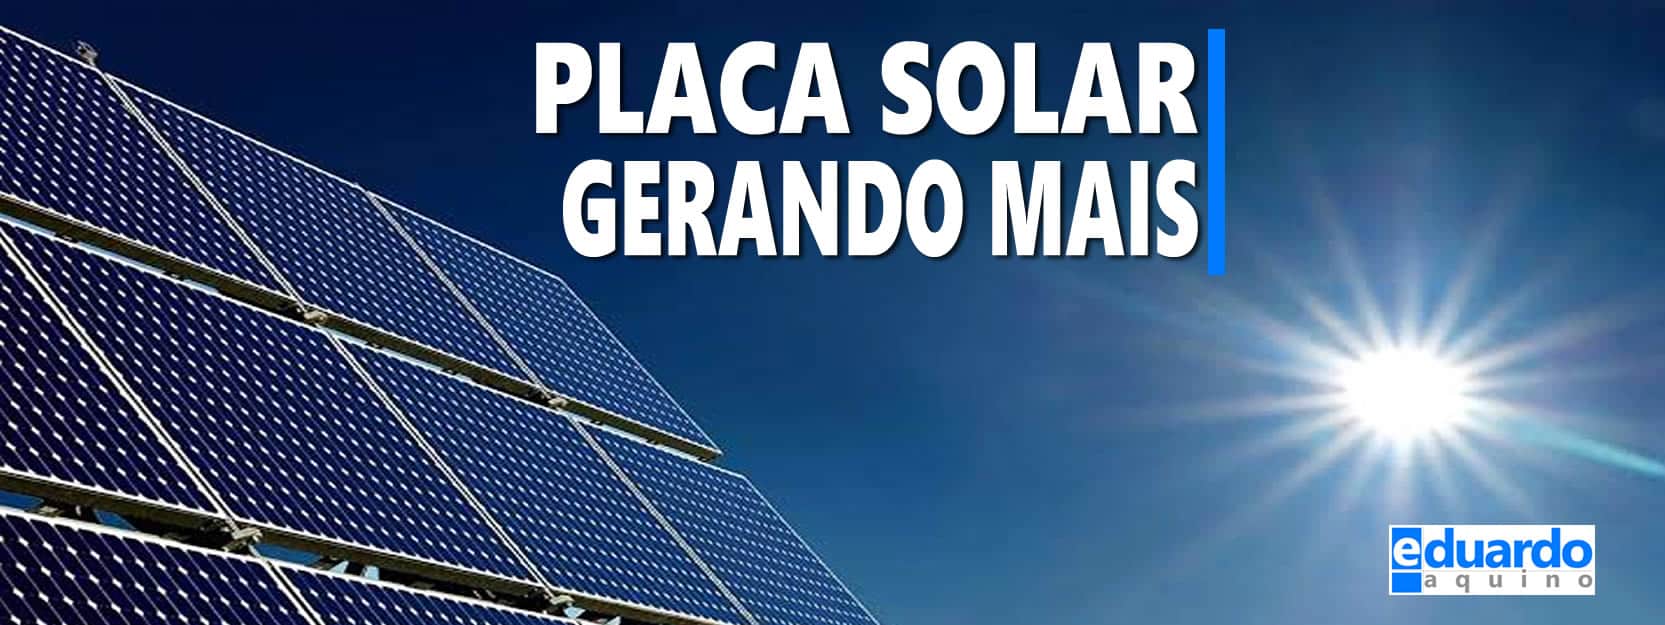 Placa Fotovoltaica pode gerar mais | Eduardo Aquino